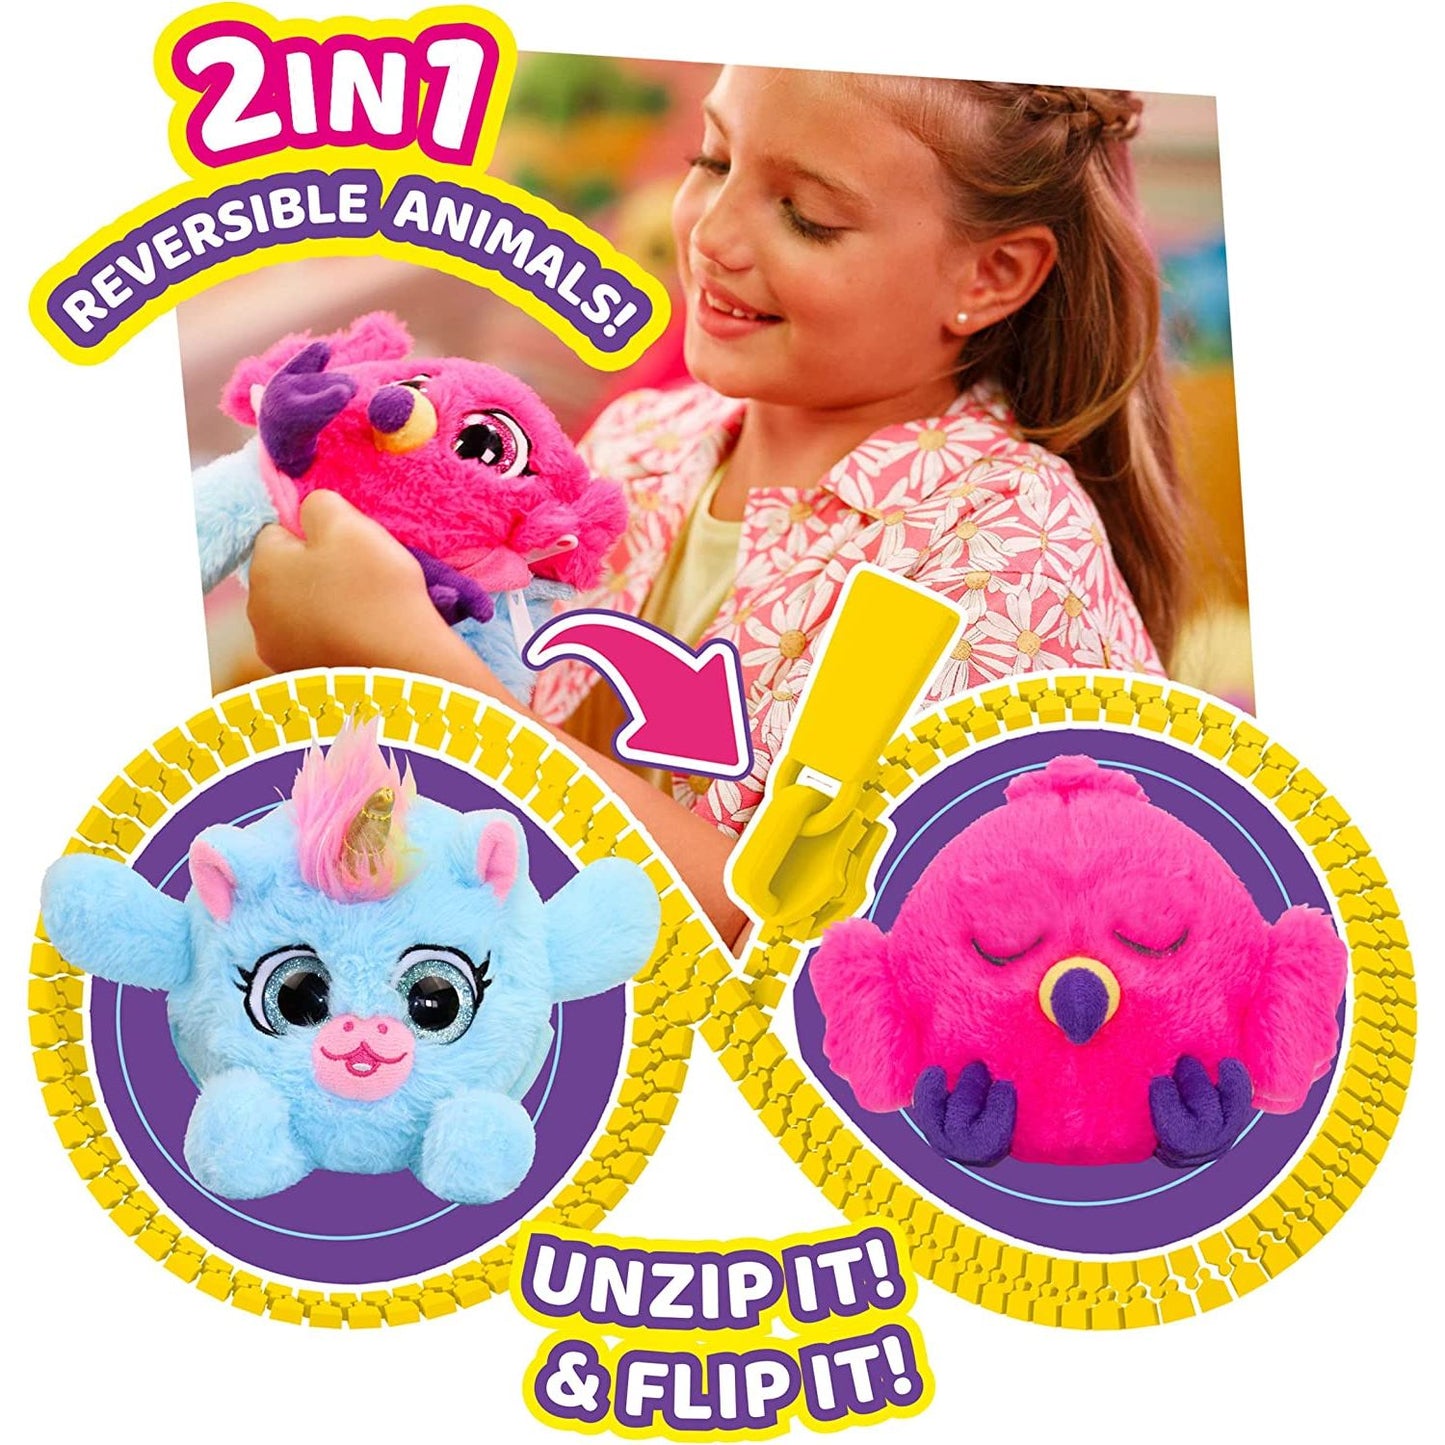 ZIPPETZ- 2 in 1 Reversible Animals - Unicorn Glass Eyes & Flamingo Sleepy Eyes - Super Soft Plush Buddies